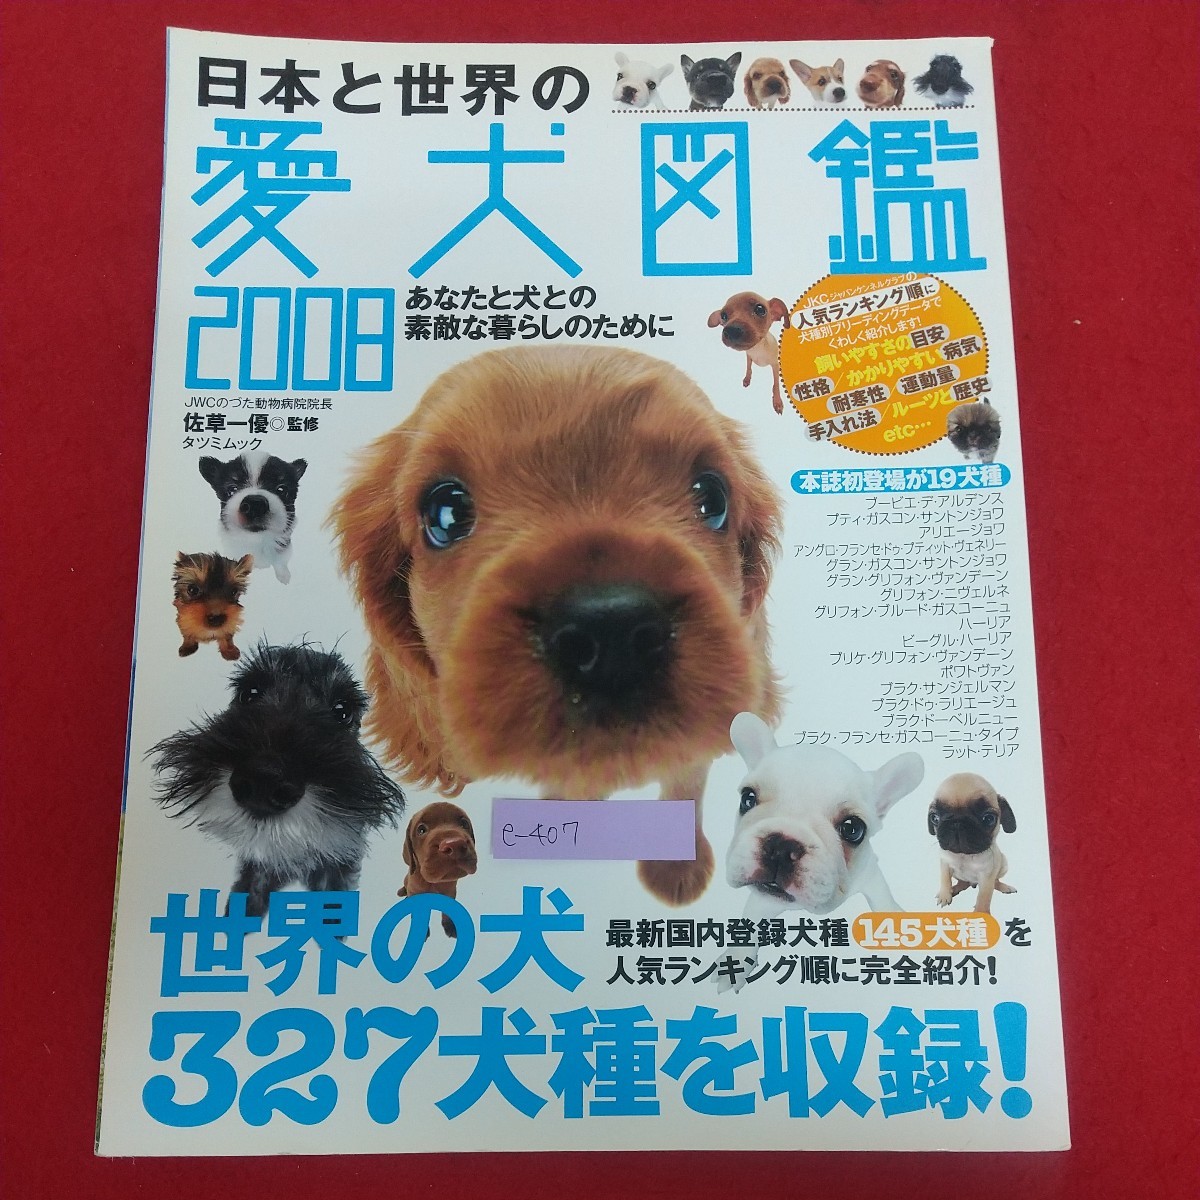 e-407※6 日本と世界の愛犬図鑑2008 タツミムック 2007年9月5日初版発行 辰巳出版株式会社 世界の犬327犬種を収録！ 人気ランキング_画像1